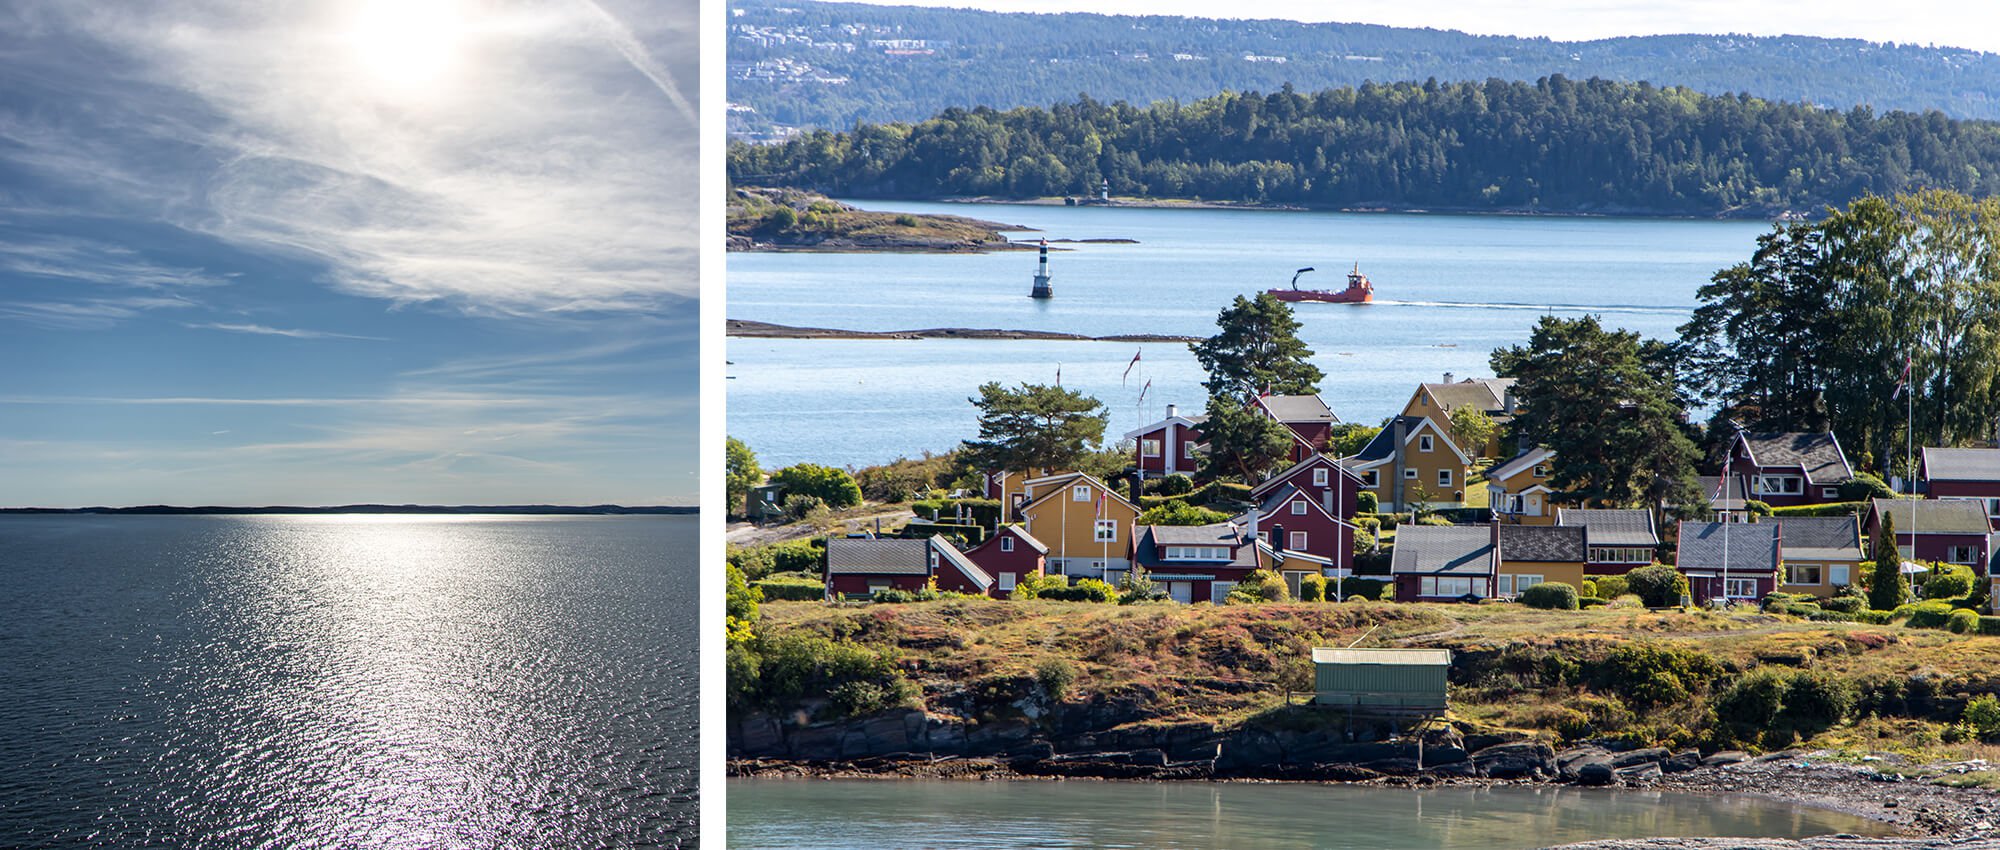 Norwegen Workation Rückfahrt von Oslo nach Kiel, Blick aufs Wasser und Land